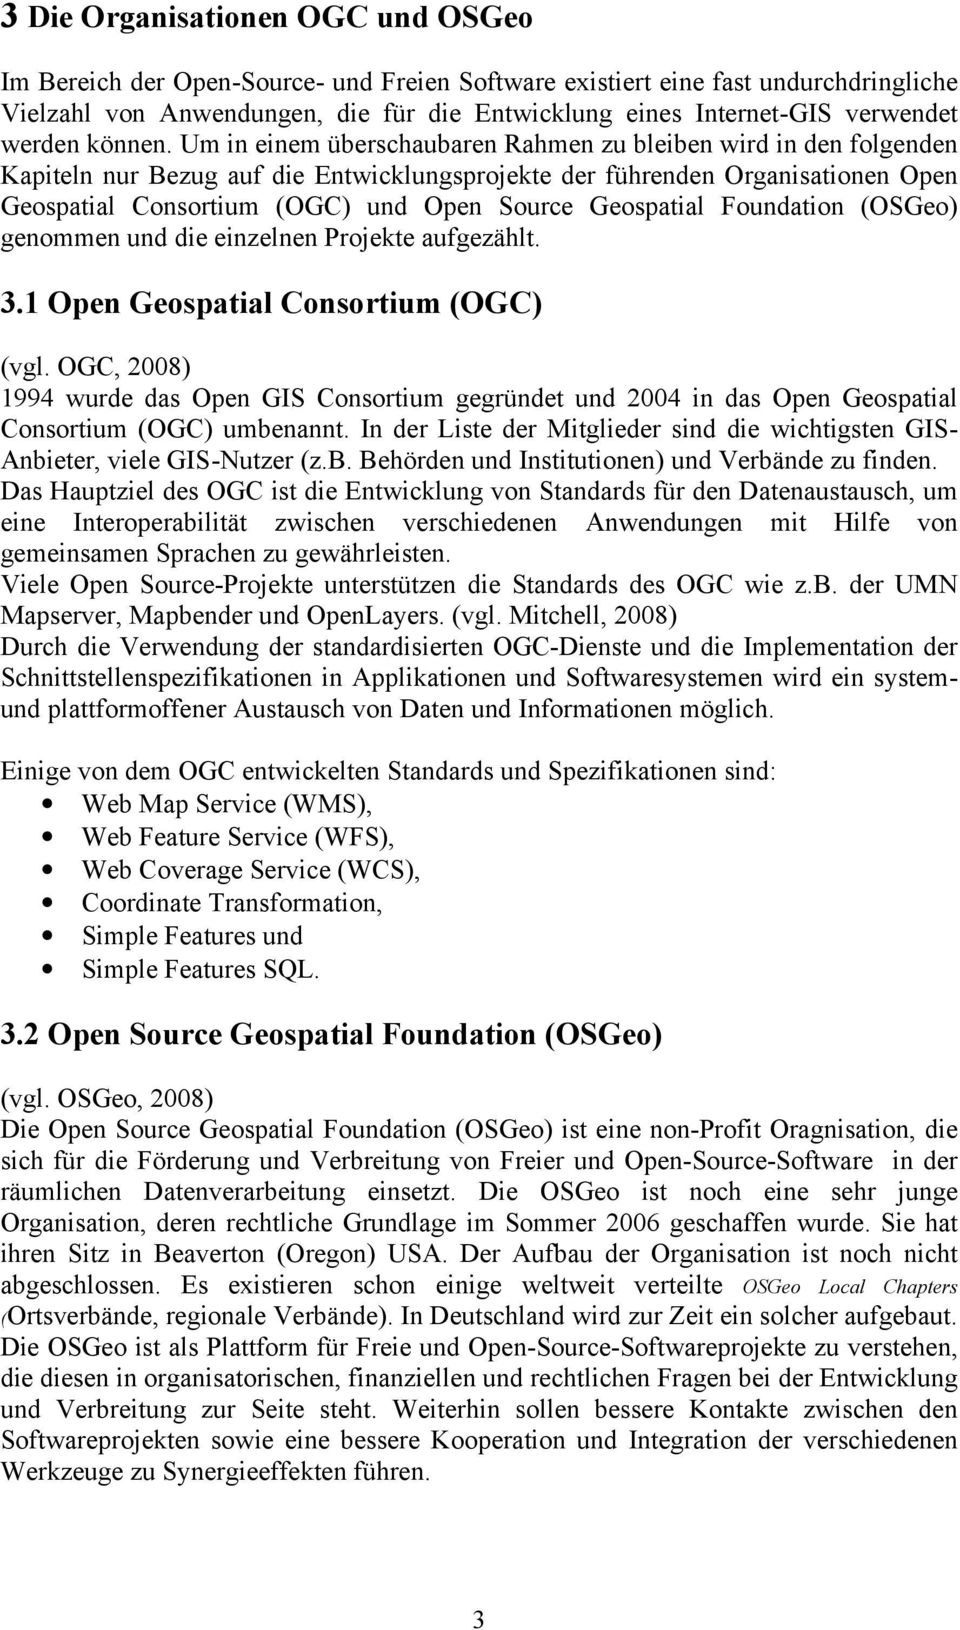 Um in einem überschaubaren Rahmen zu bleiben wird in den folgenden Kapiteln nur Bezug auf die Entwicklungsprojekte der führenden Organisationen Open Geospatial Consortium (OGC) und Open Source